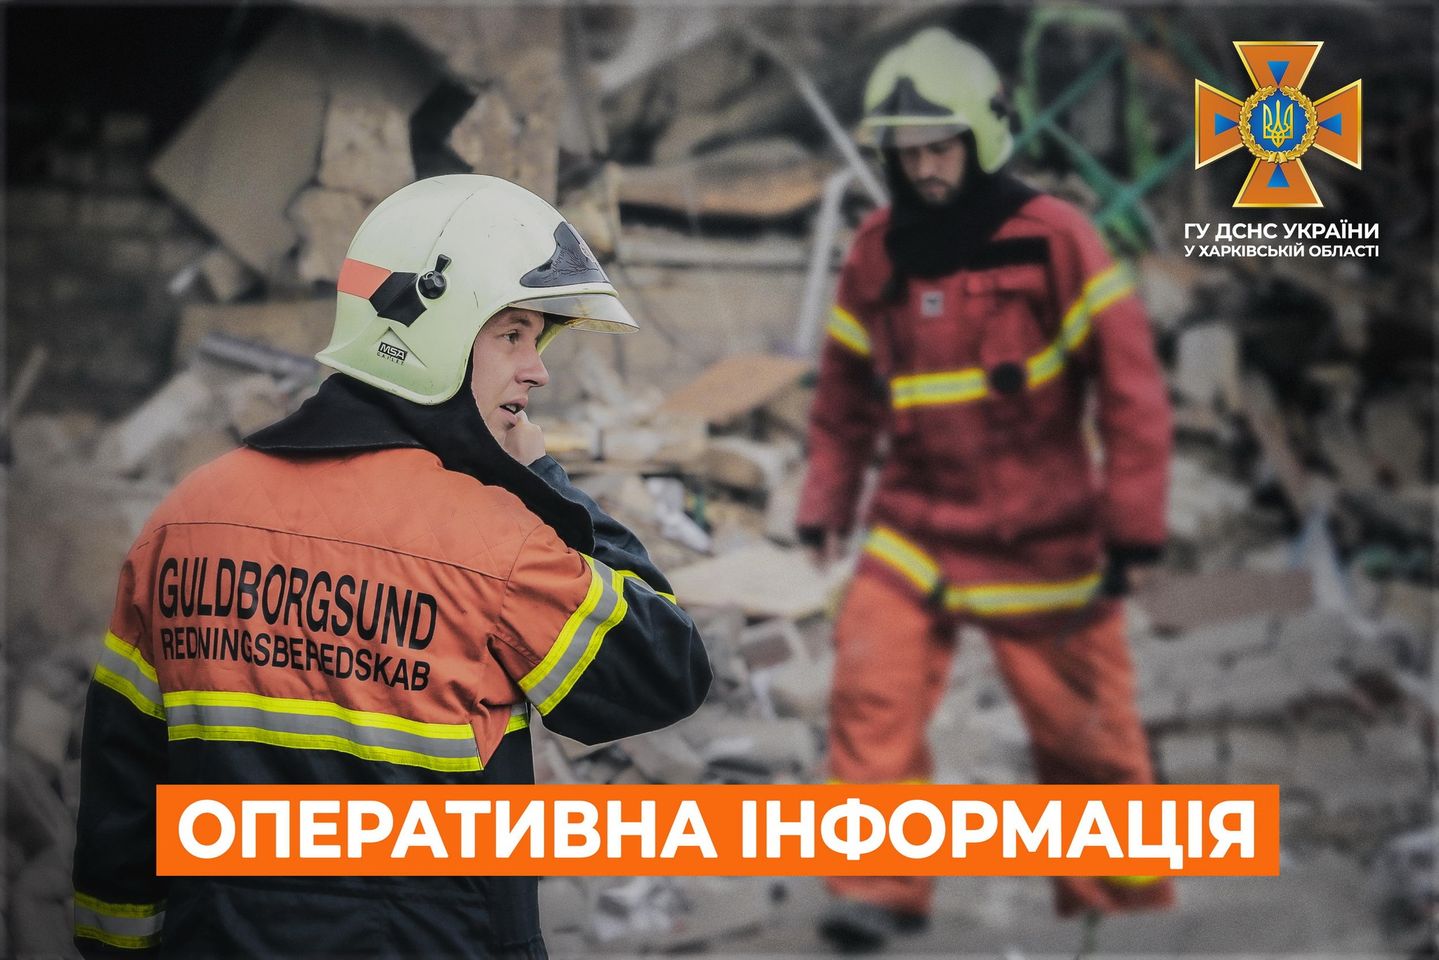 На Харьковщине повреждены локомотивное депо, больница и религиозное сооружение